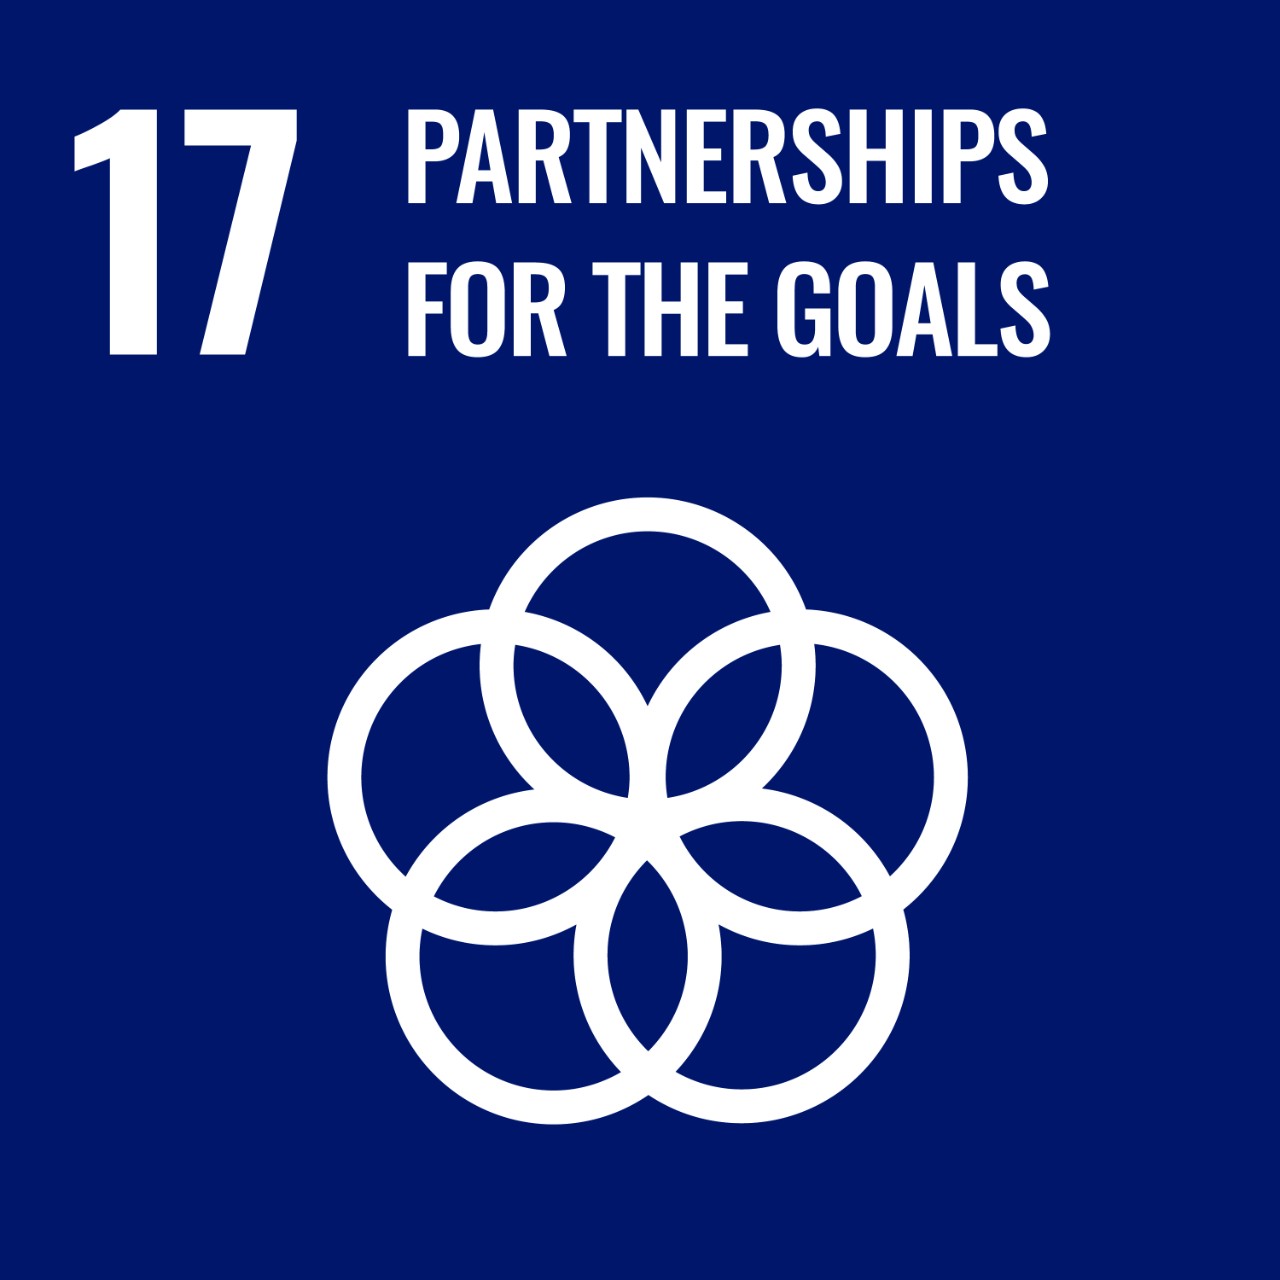 SDG 17 Partnership for the goals